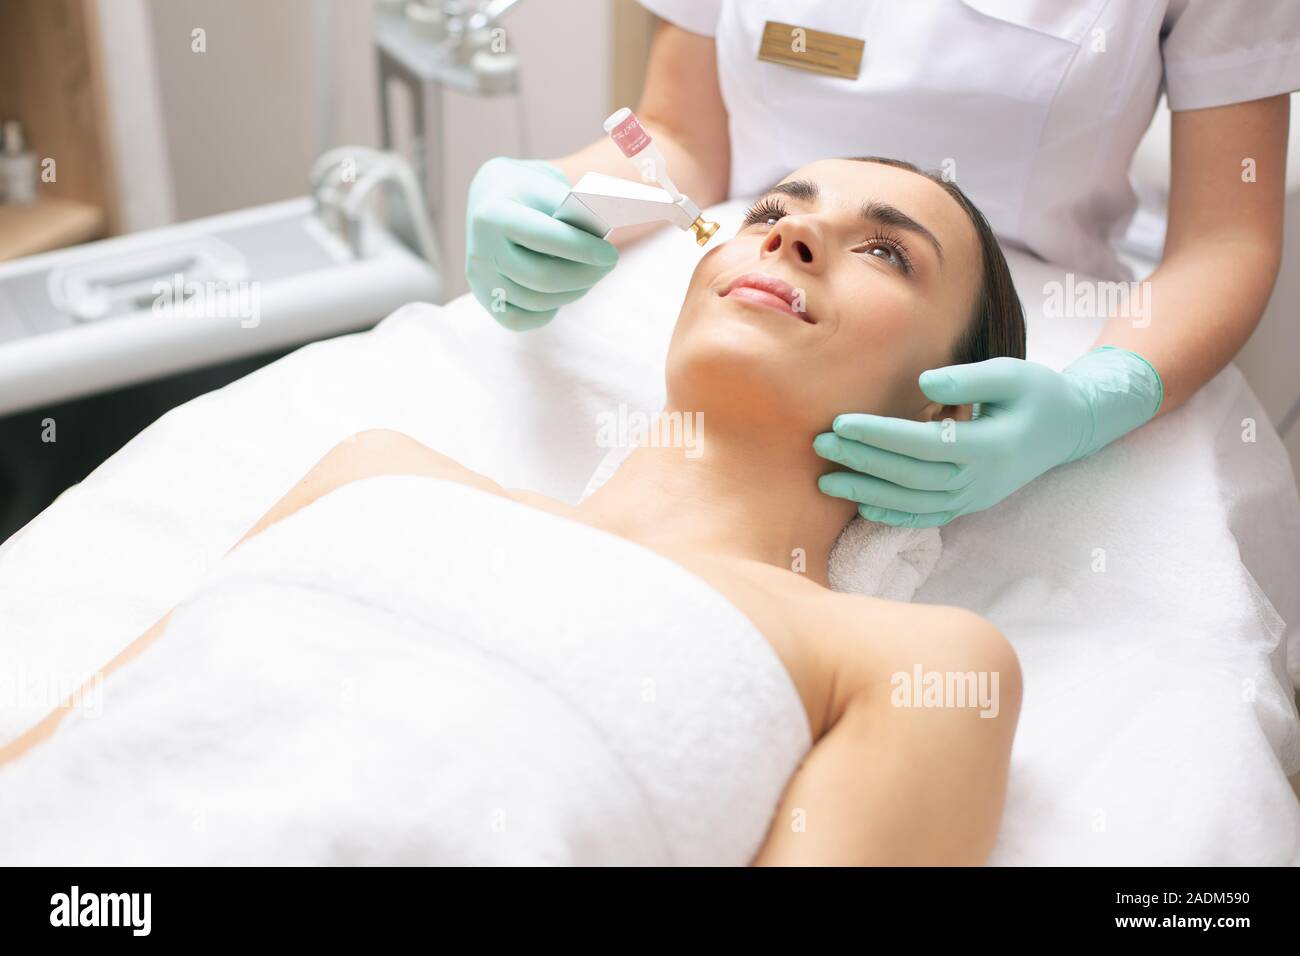 Bella donna cerca rilassata durante il fresco ossigeno procedura di sollevamento Foto Stock